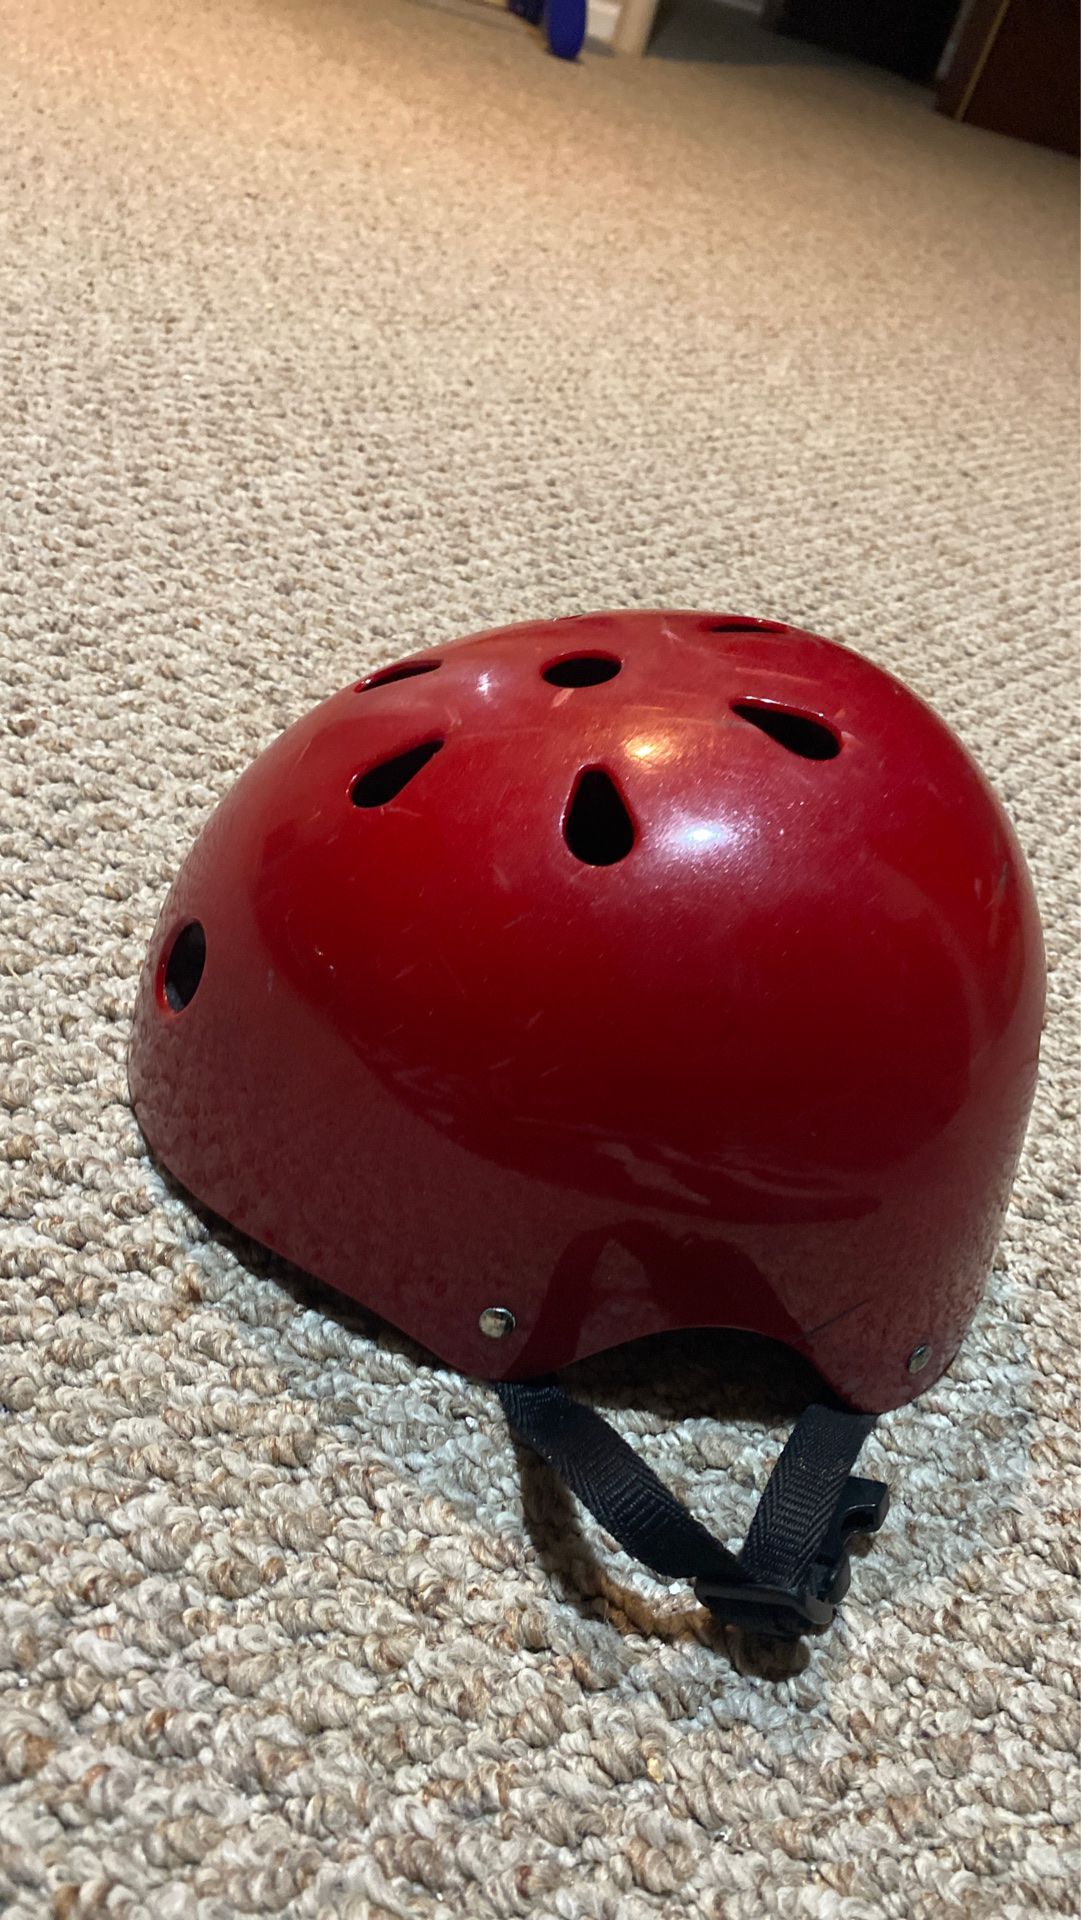 Skater helmets used